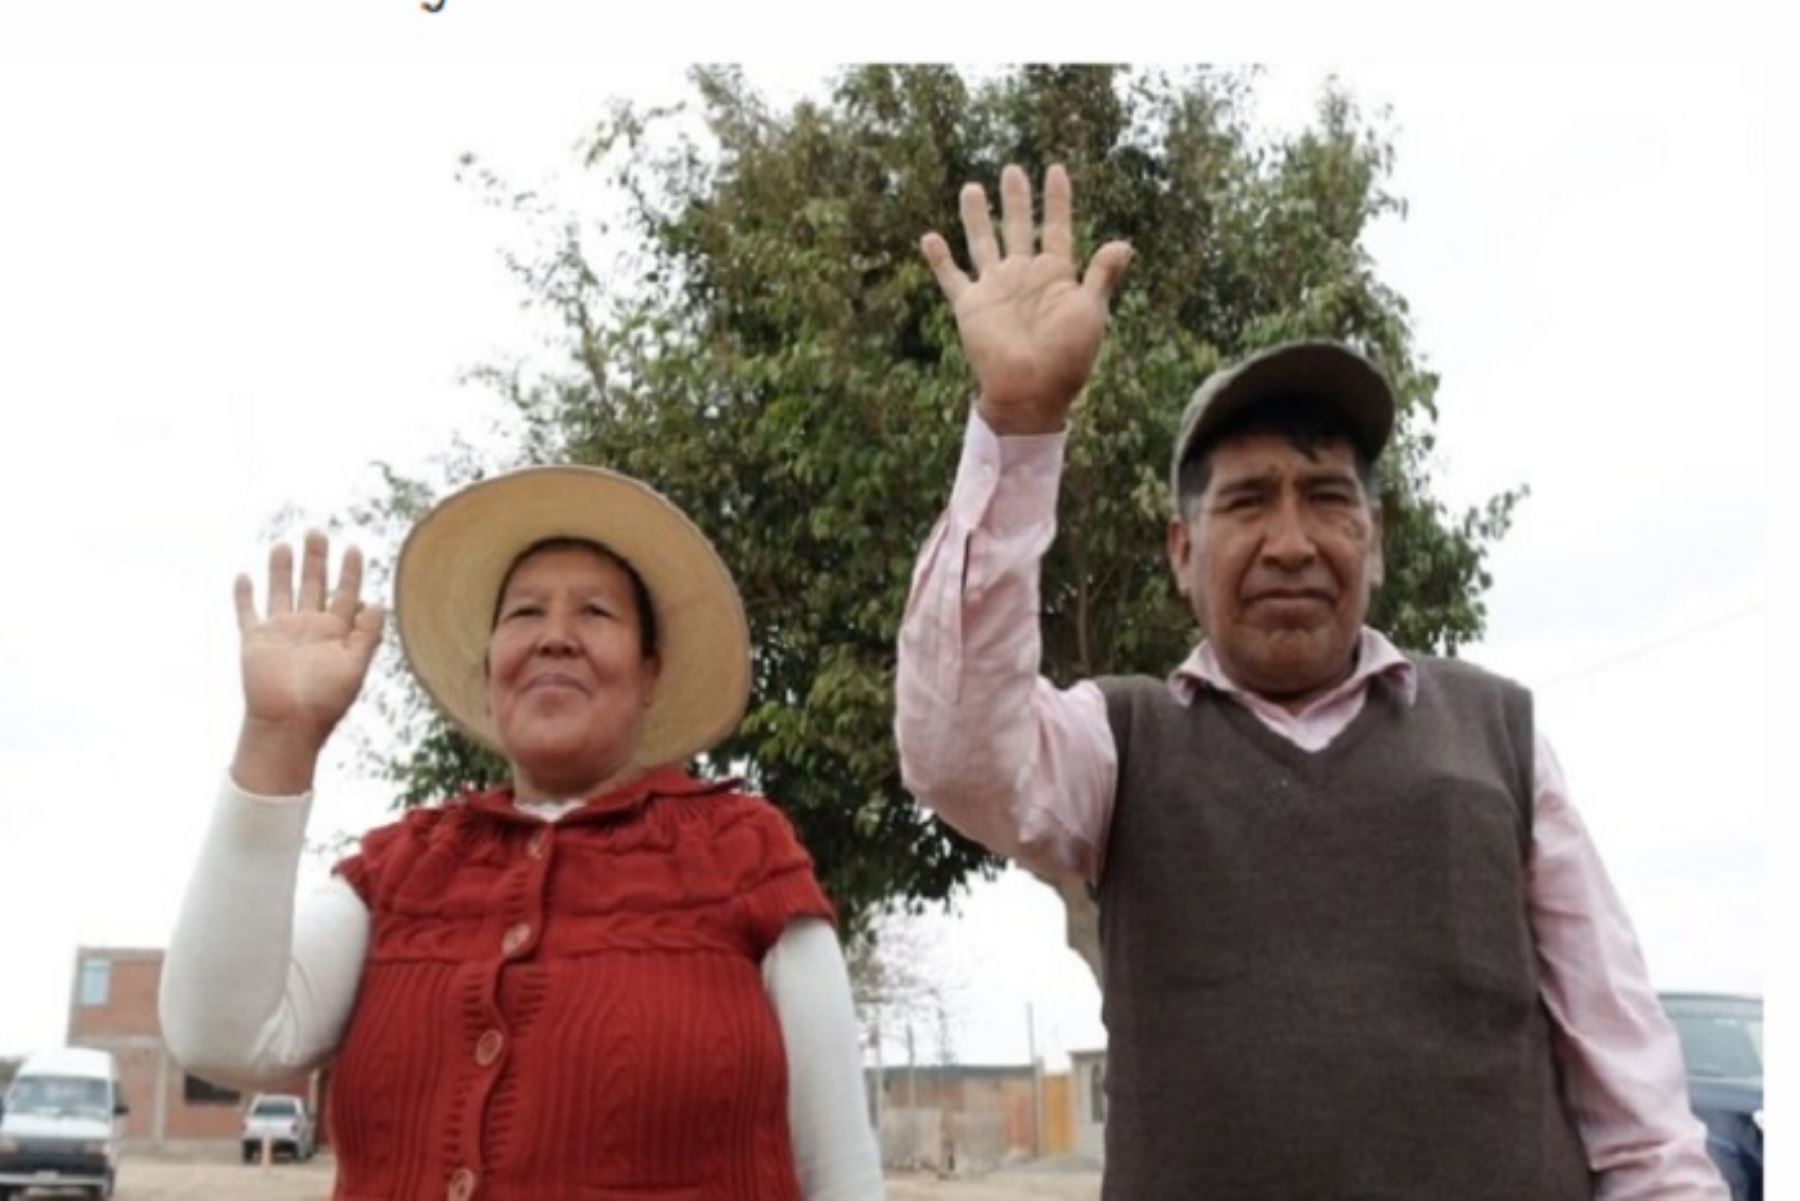 El MEF transfirió al Gobierno Regional de Tacna 3 millones 886,937 soles de recursos ordinarios para el pago del 55% de la deuda de las tarifas eléctricas en beneficio de los agricultores de La Yarada - Los Palos, ubicada en los 50 kilómetros del límite fronterizo